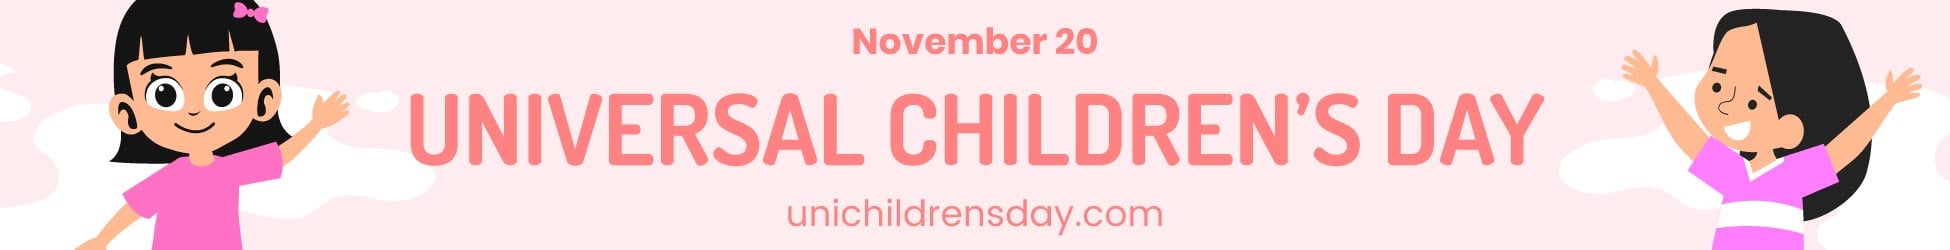 Universal Children’s Day Website Banner